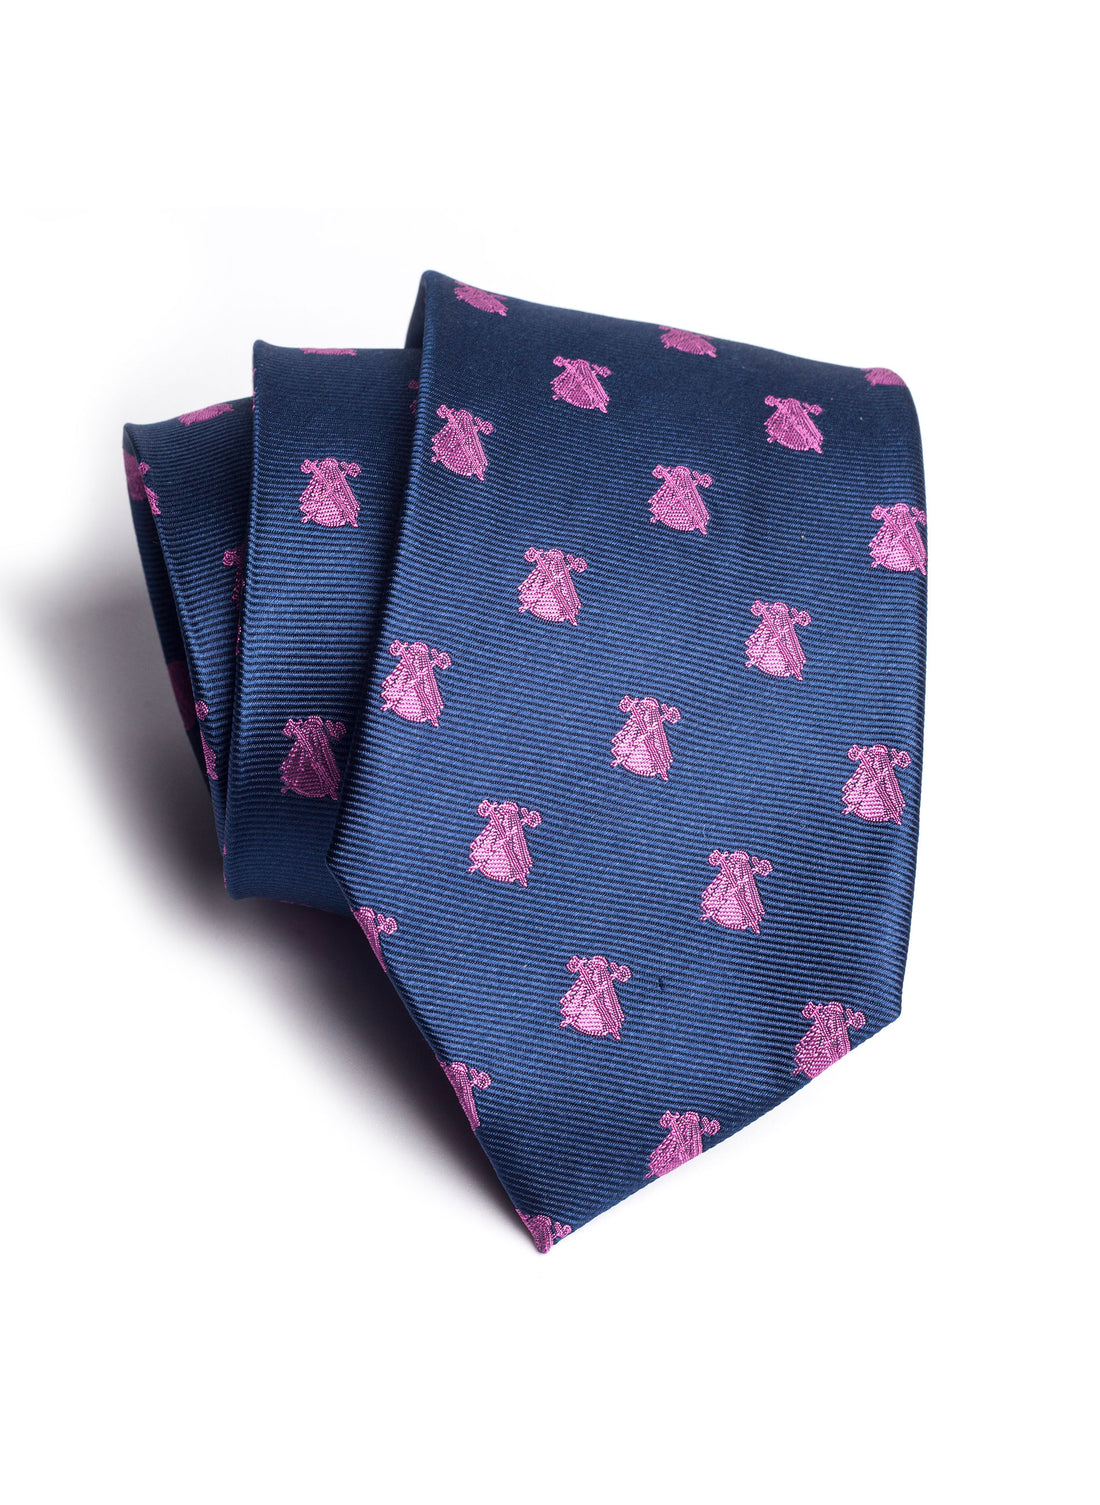 Blauwe stropdas met roze capotes